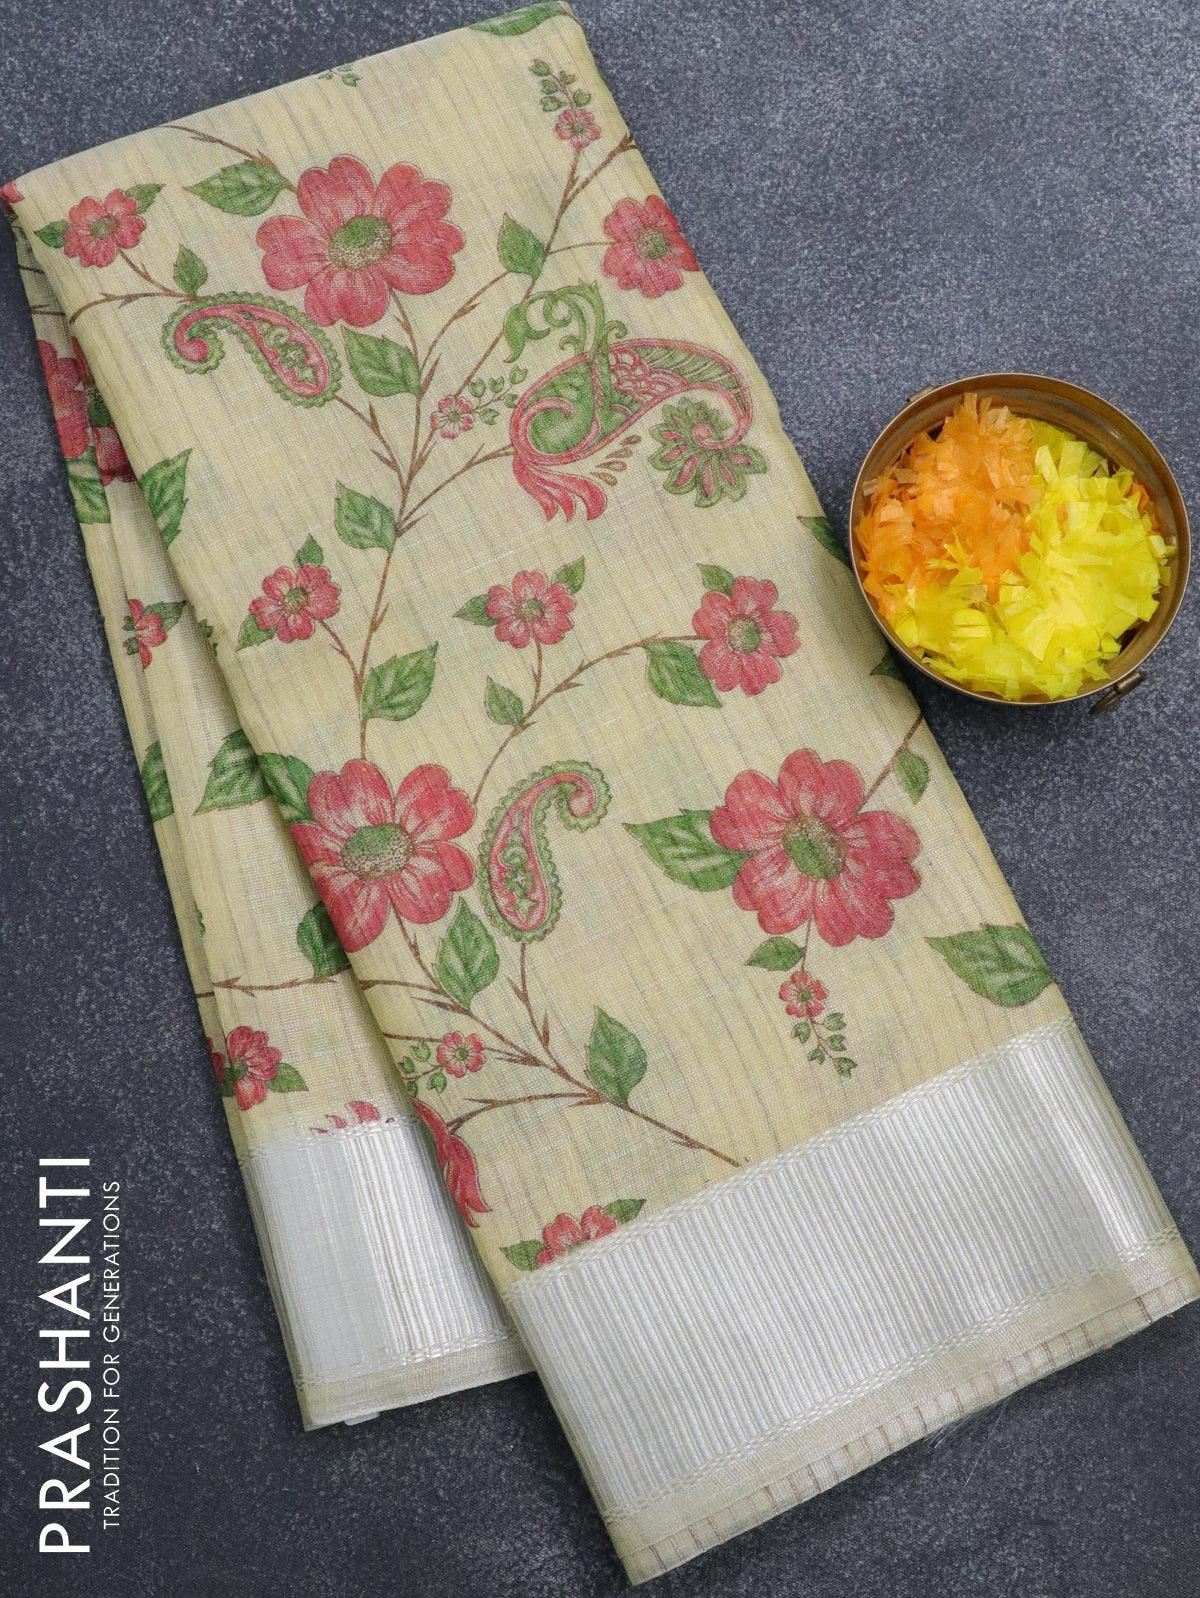 Linen Cotton Sarees by Prashanti - YouTube